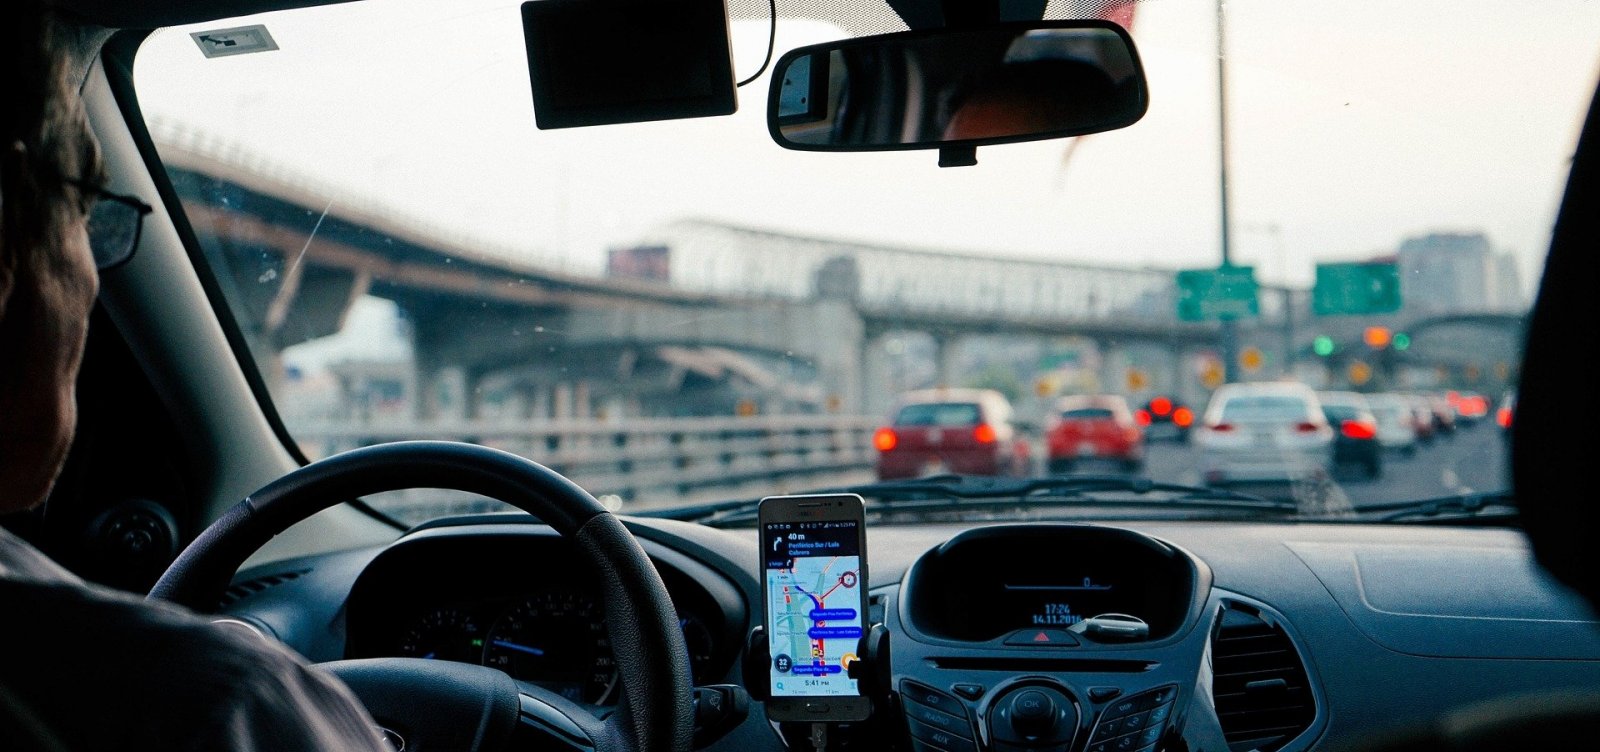 Um em cada cinco motoristas no Brasil admite uso do celular ao dirigir, aponta pesquisa